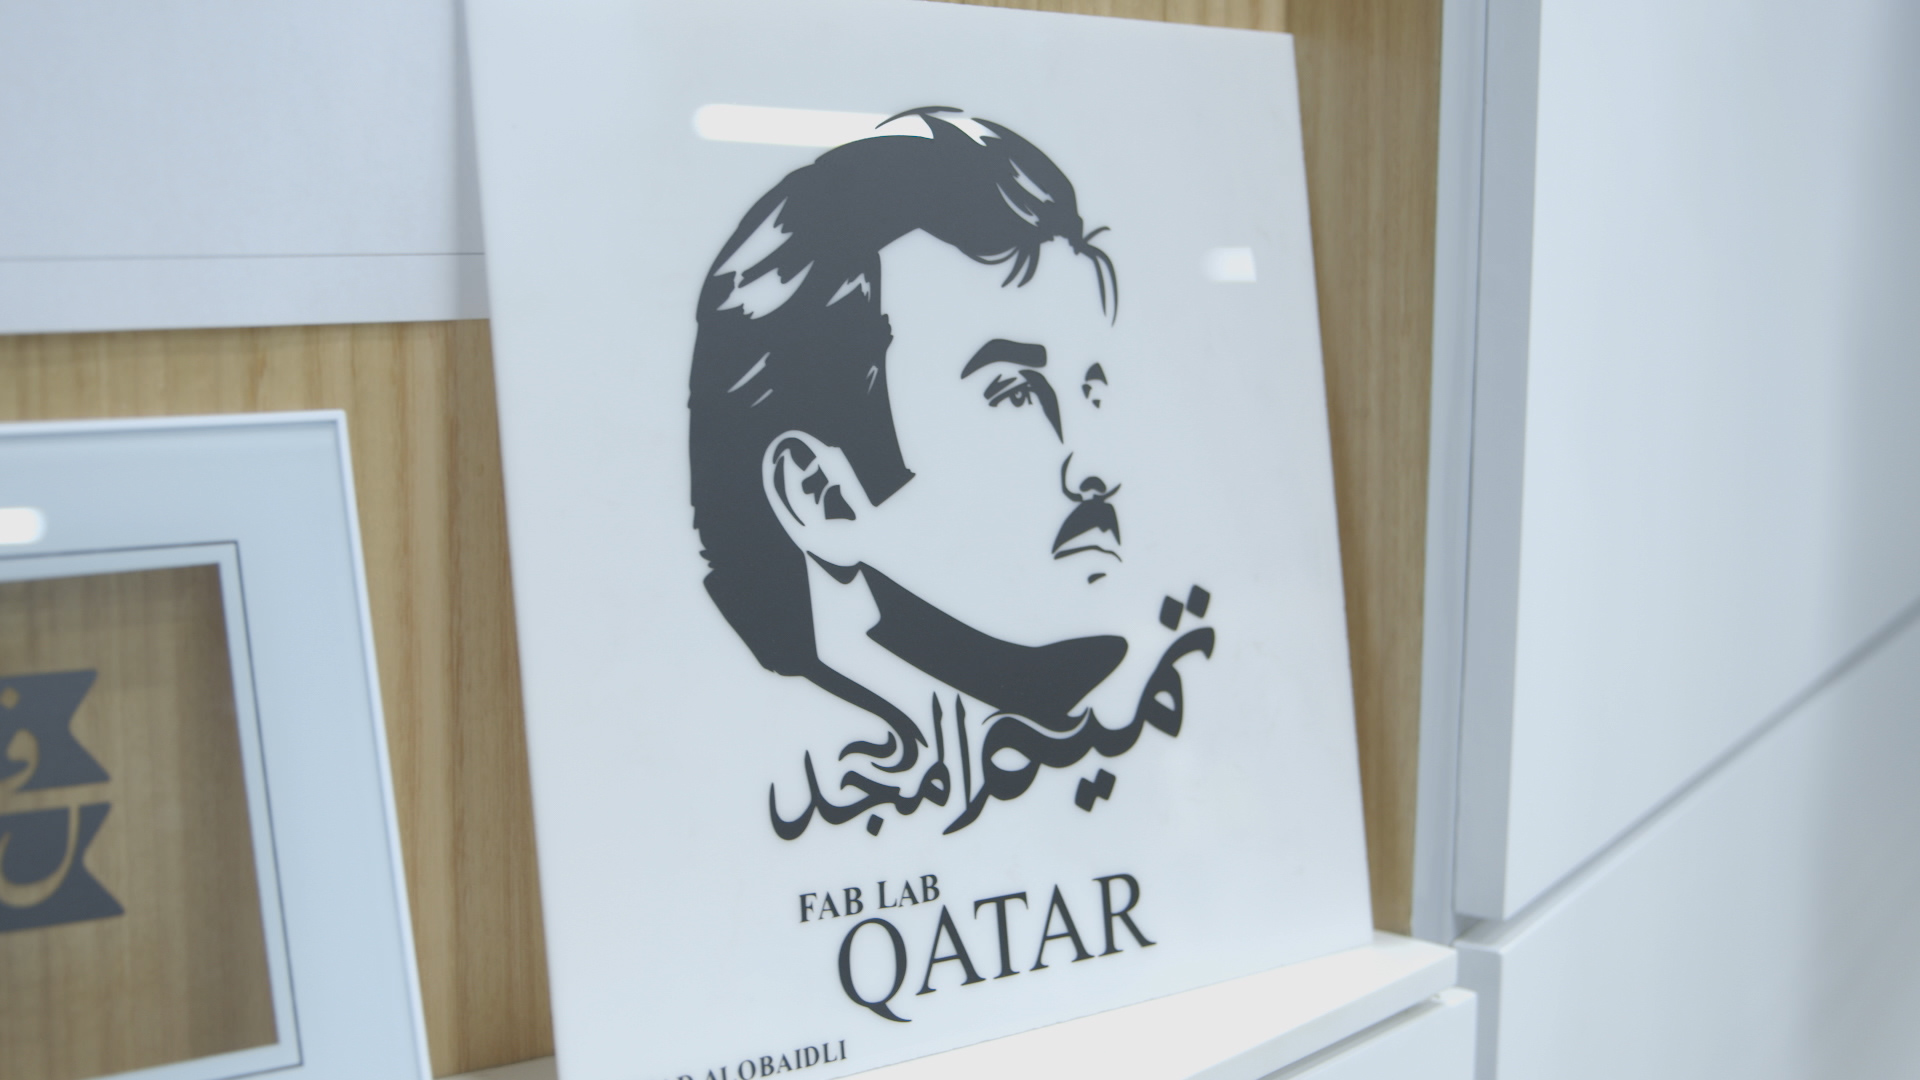 Fab Lab Qatar